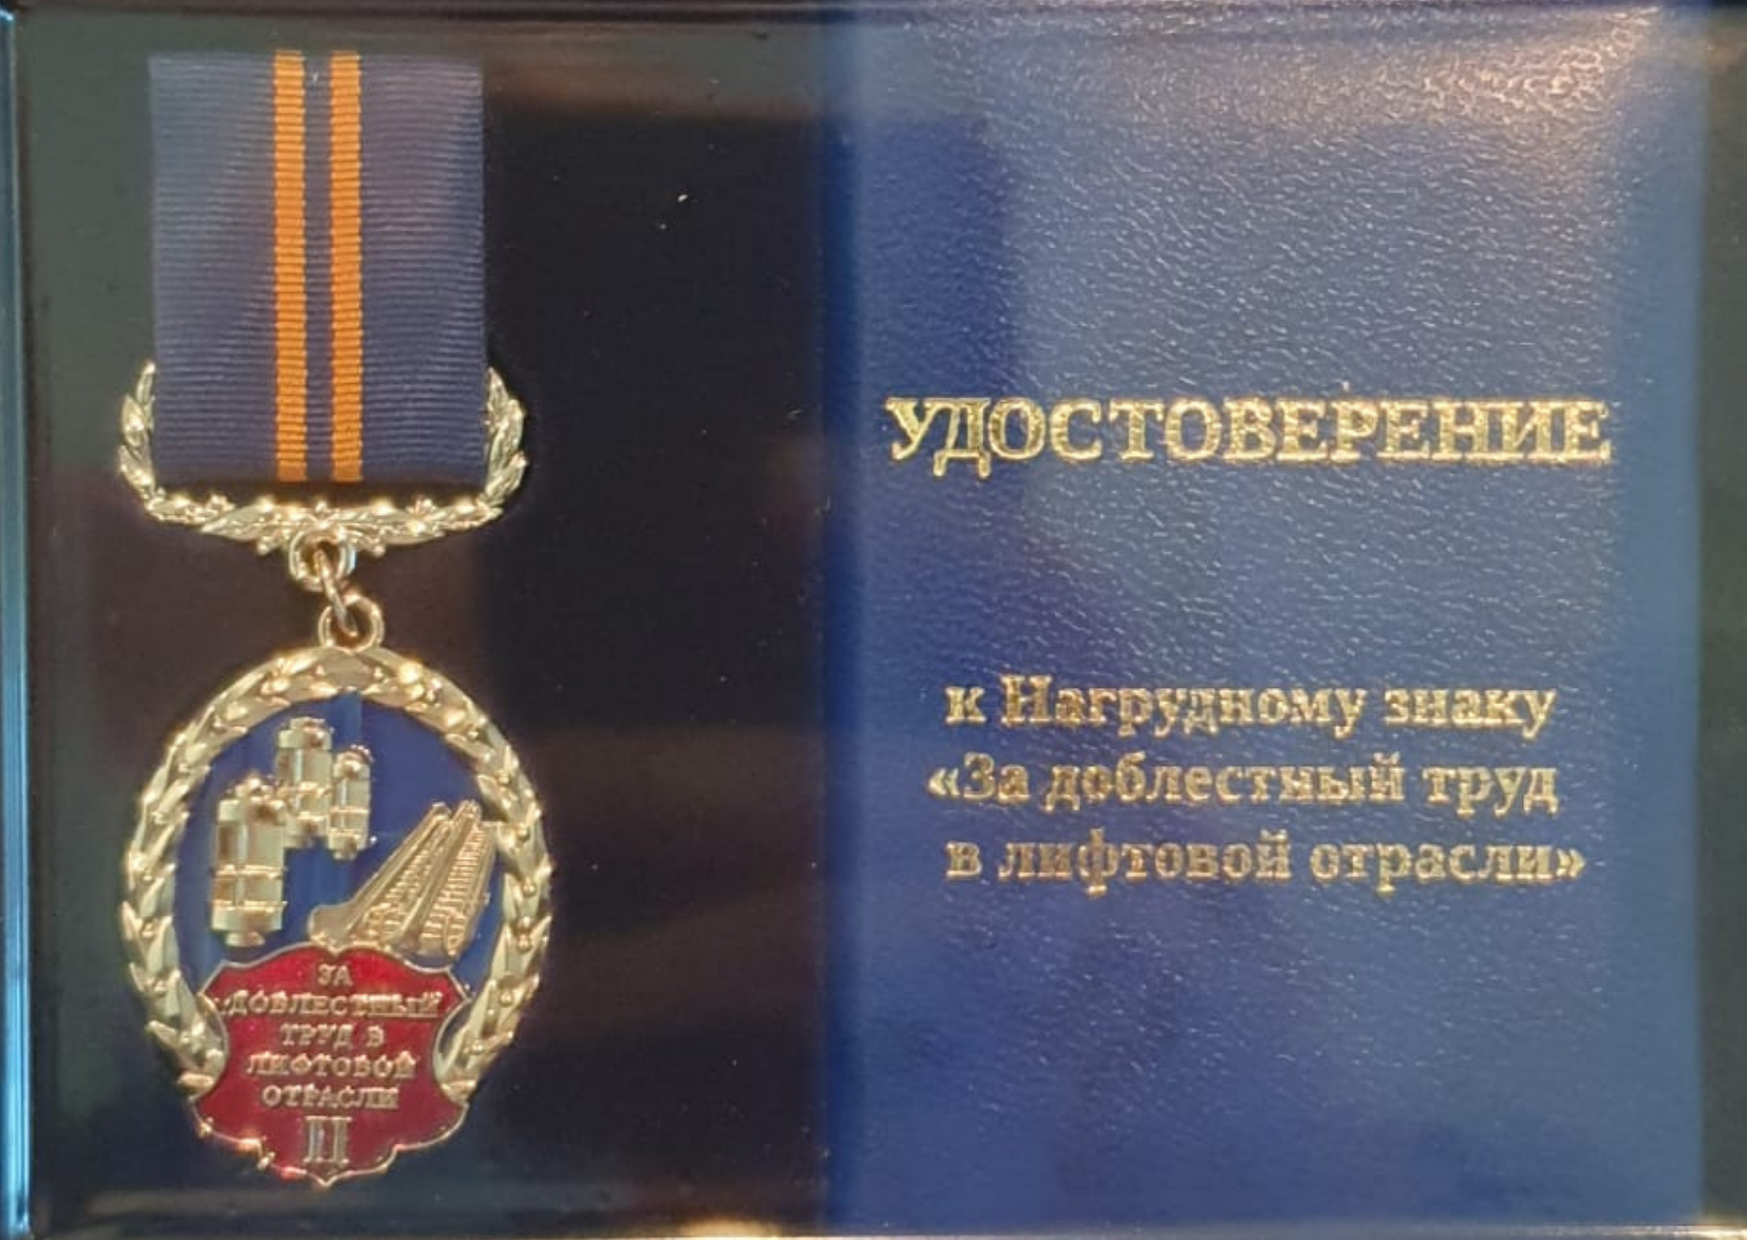 Генеральный директор ООО «МАШ ЮНИТ» Андрей Ларин получил нагрудный знак «За доблестный труд в лифтовой отрасли» 2 степени